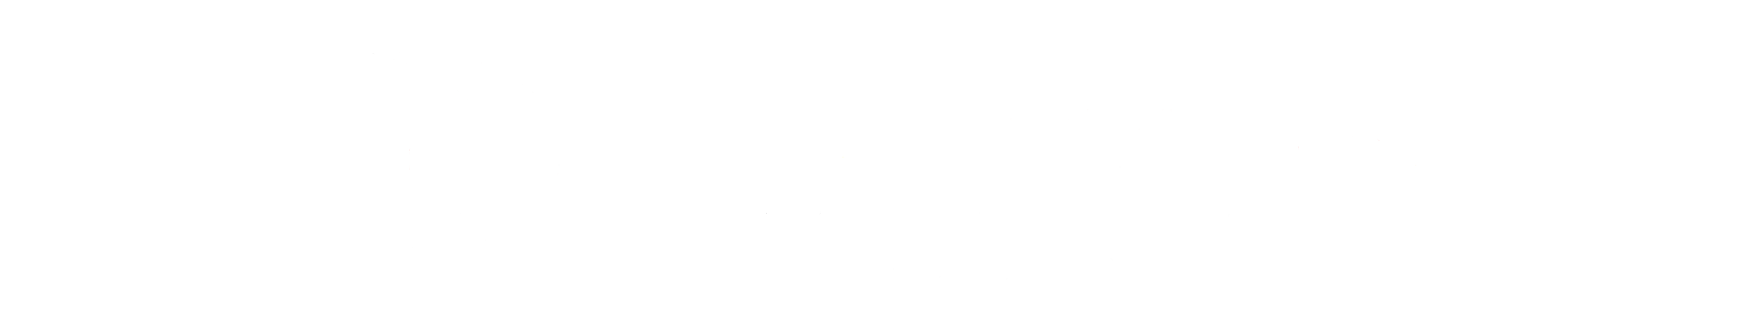 Hallmark Commercial Insurance Solutions logo